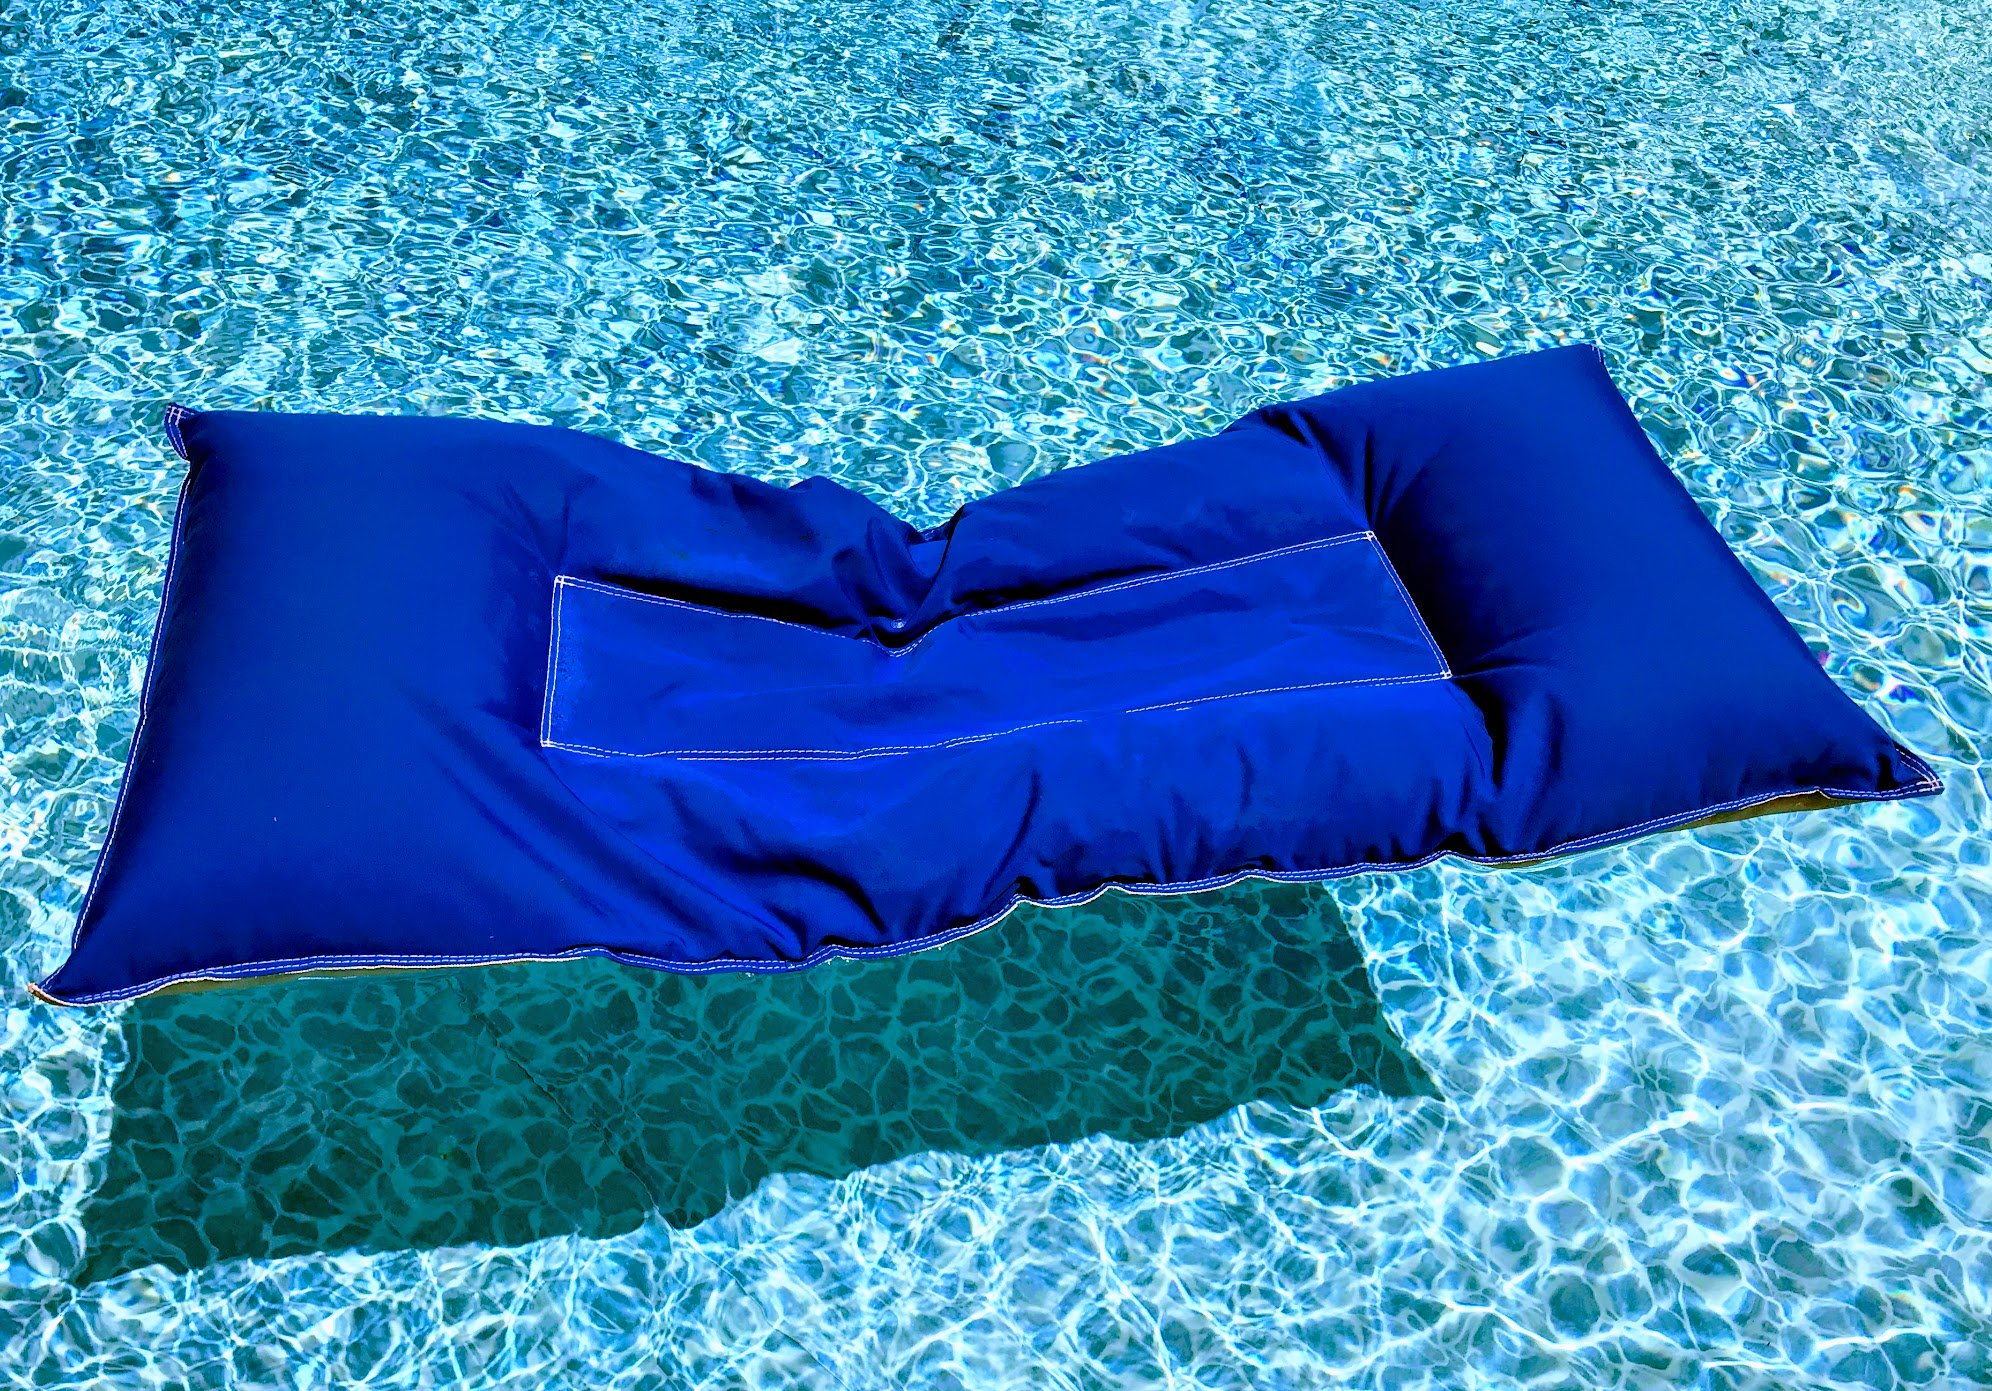 fabric pool floats